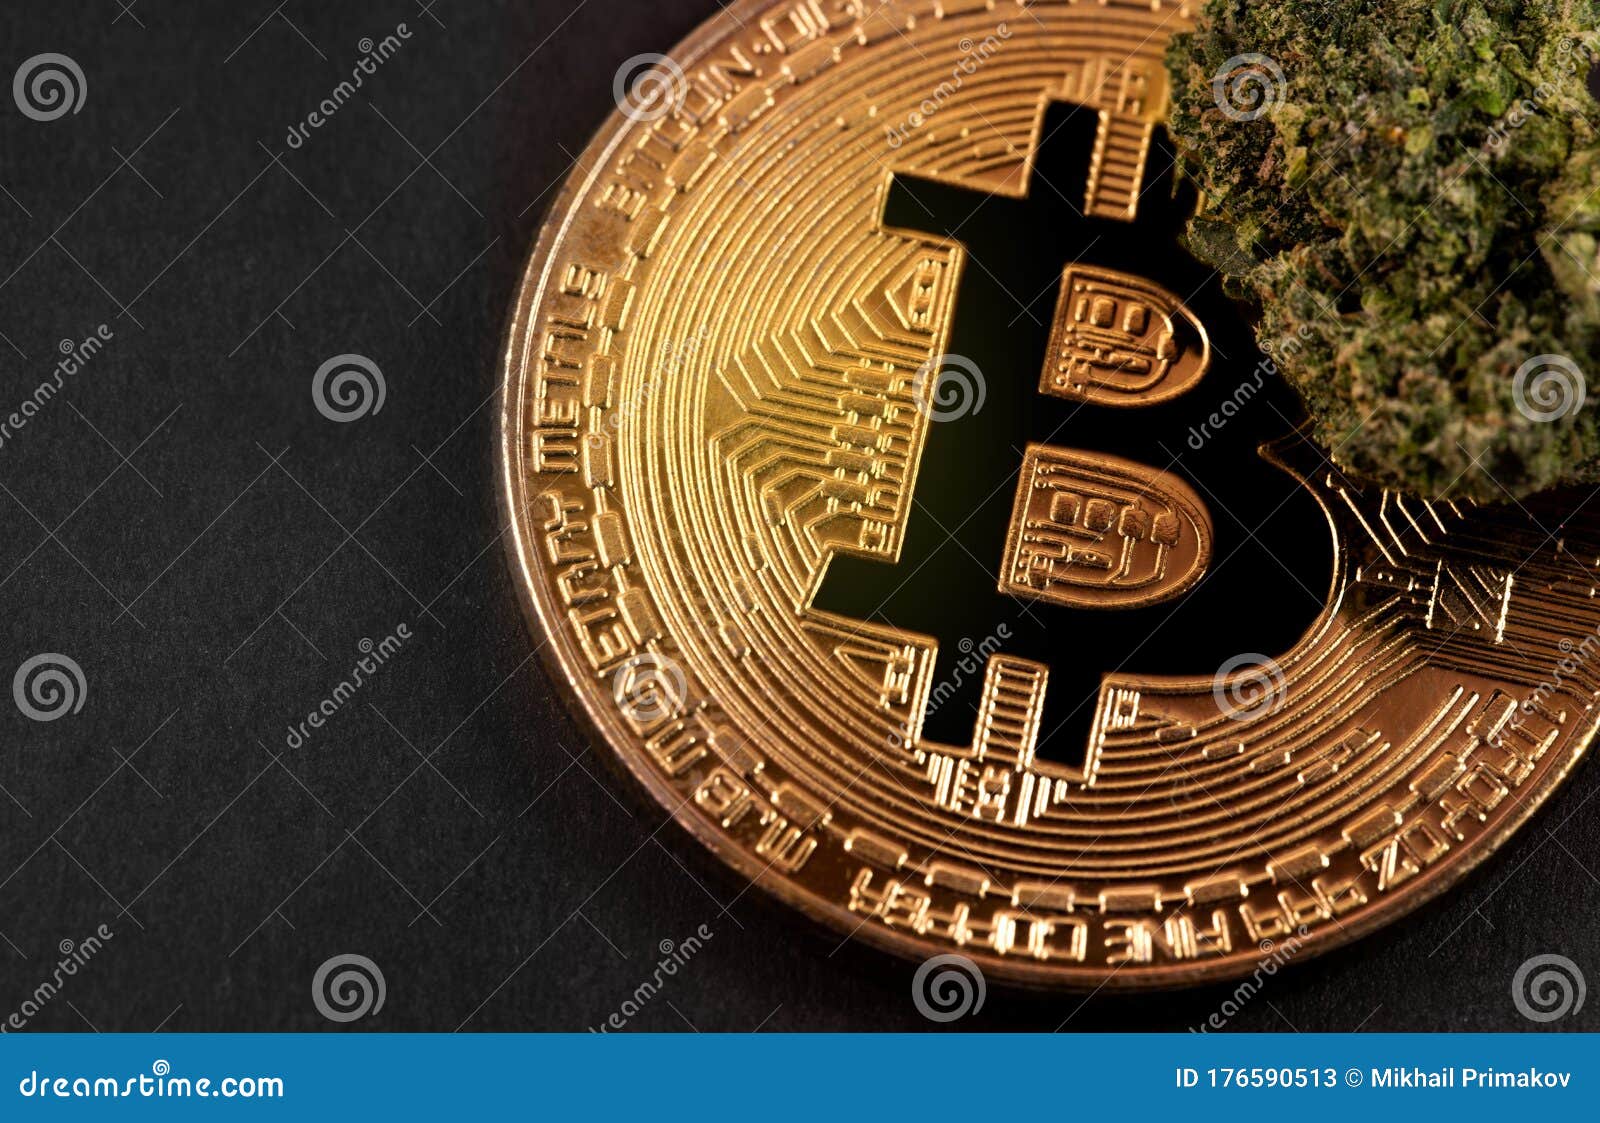 cannabis bitcoin